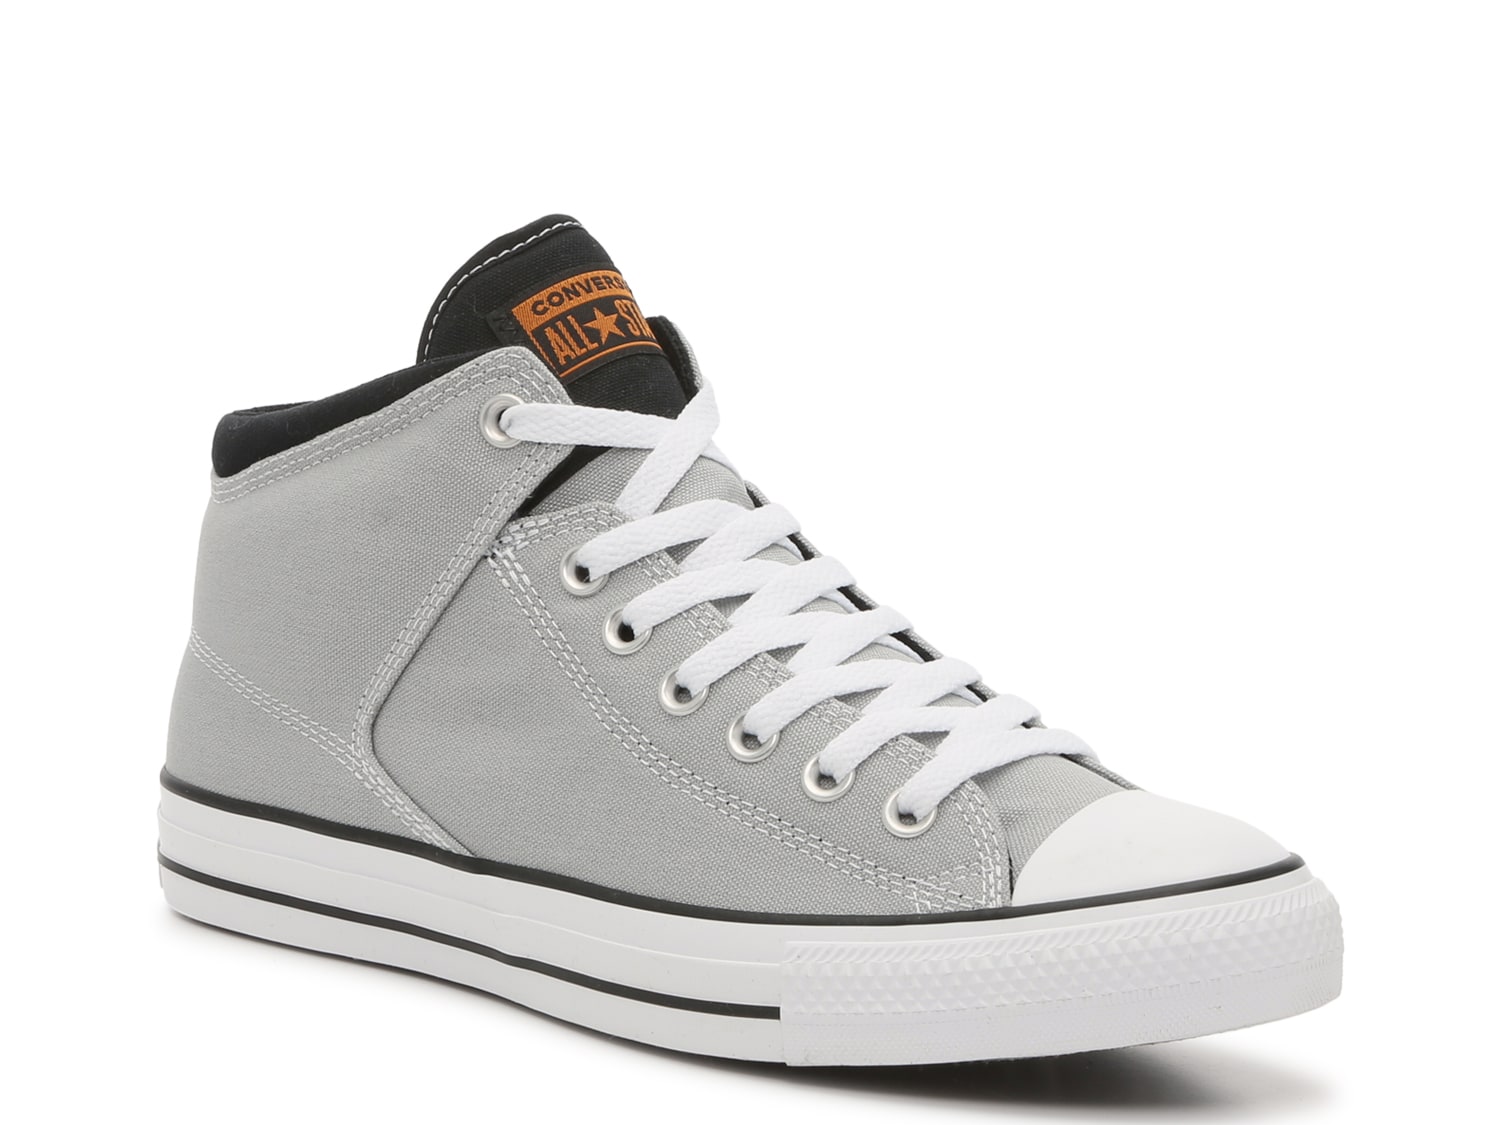 Converse Chuck Taylor All Star High Street High Top Sneaker - Men's ...